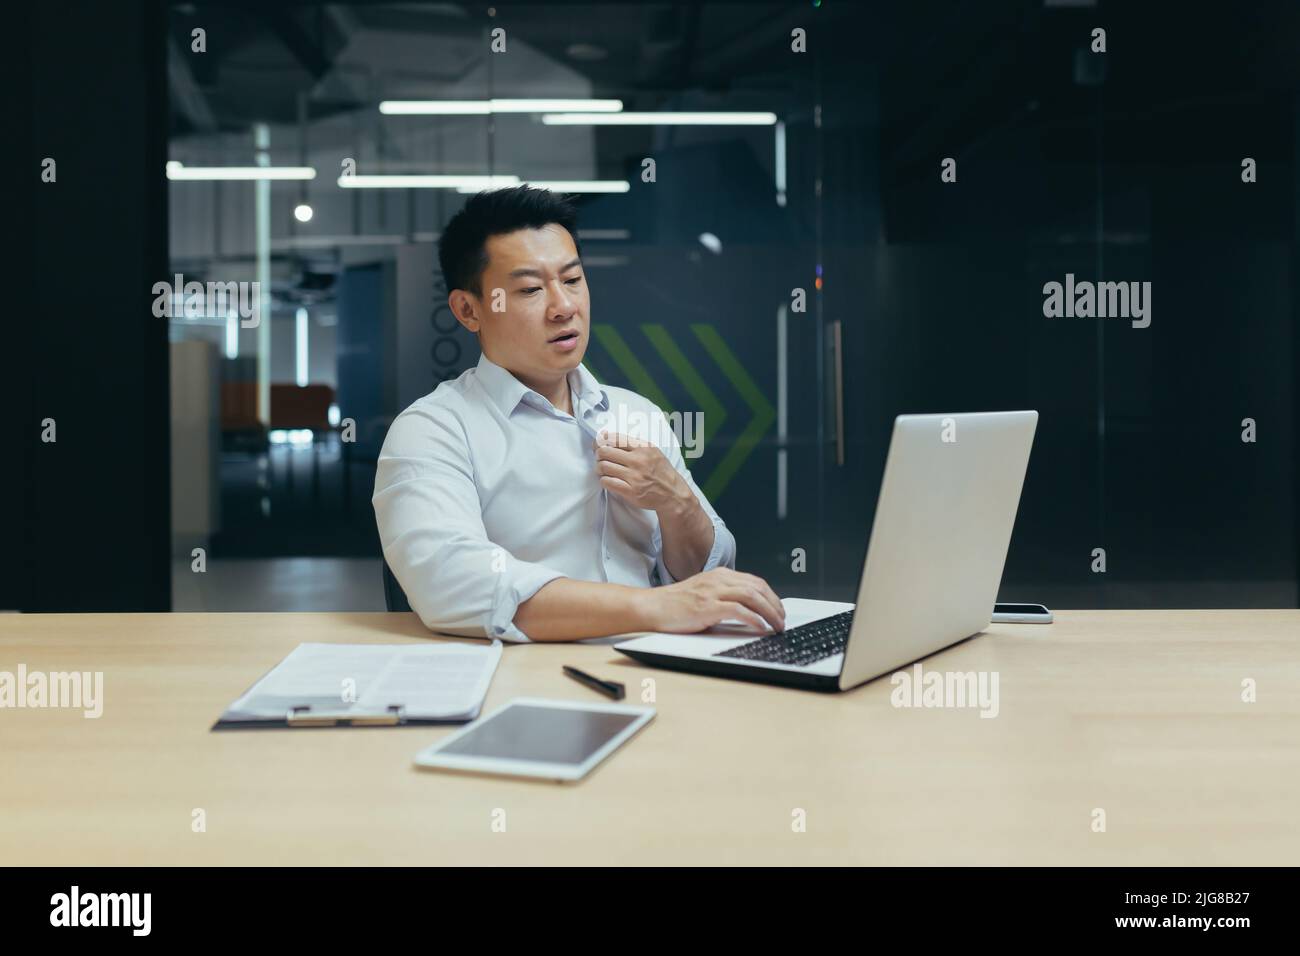 Il calore e la mancanza di aria in ufficio, un uomo asiatico lavora su un computer portatile, è caldo e non c'è aria condizionata. Foto Stock